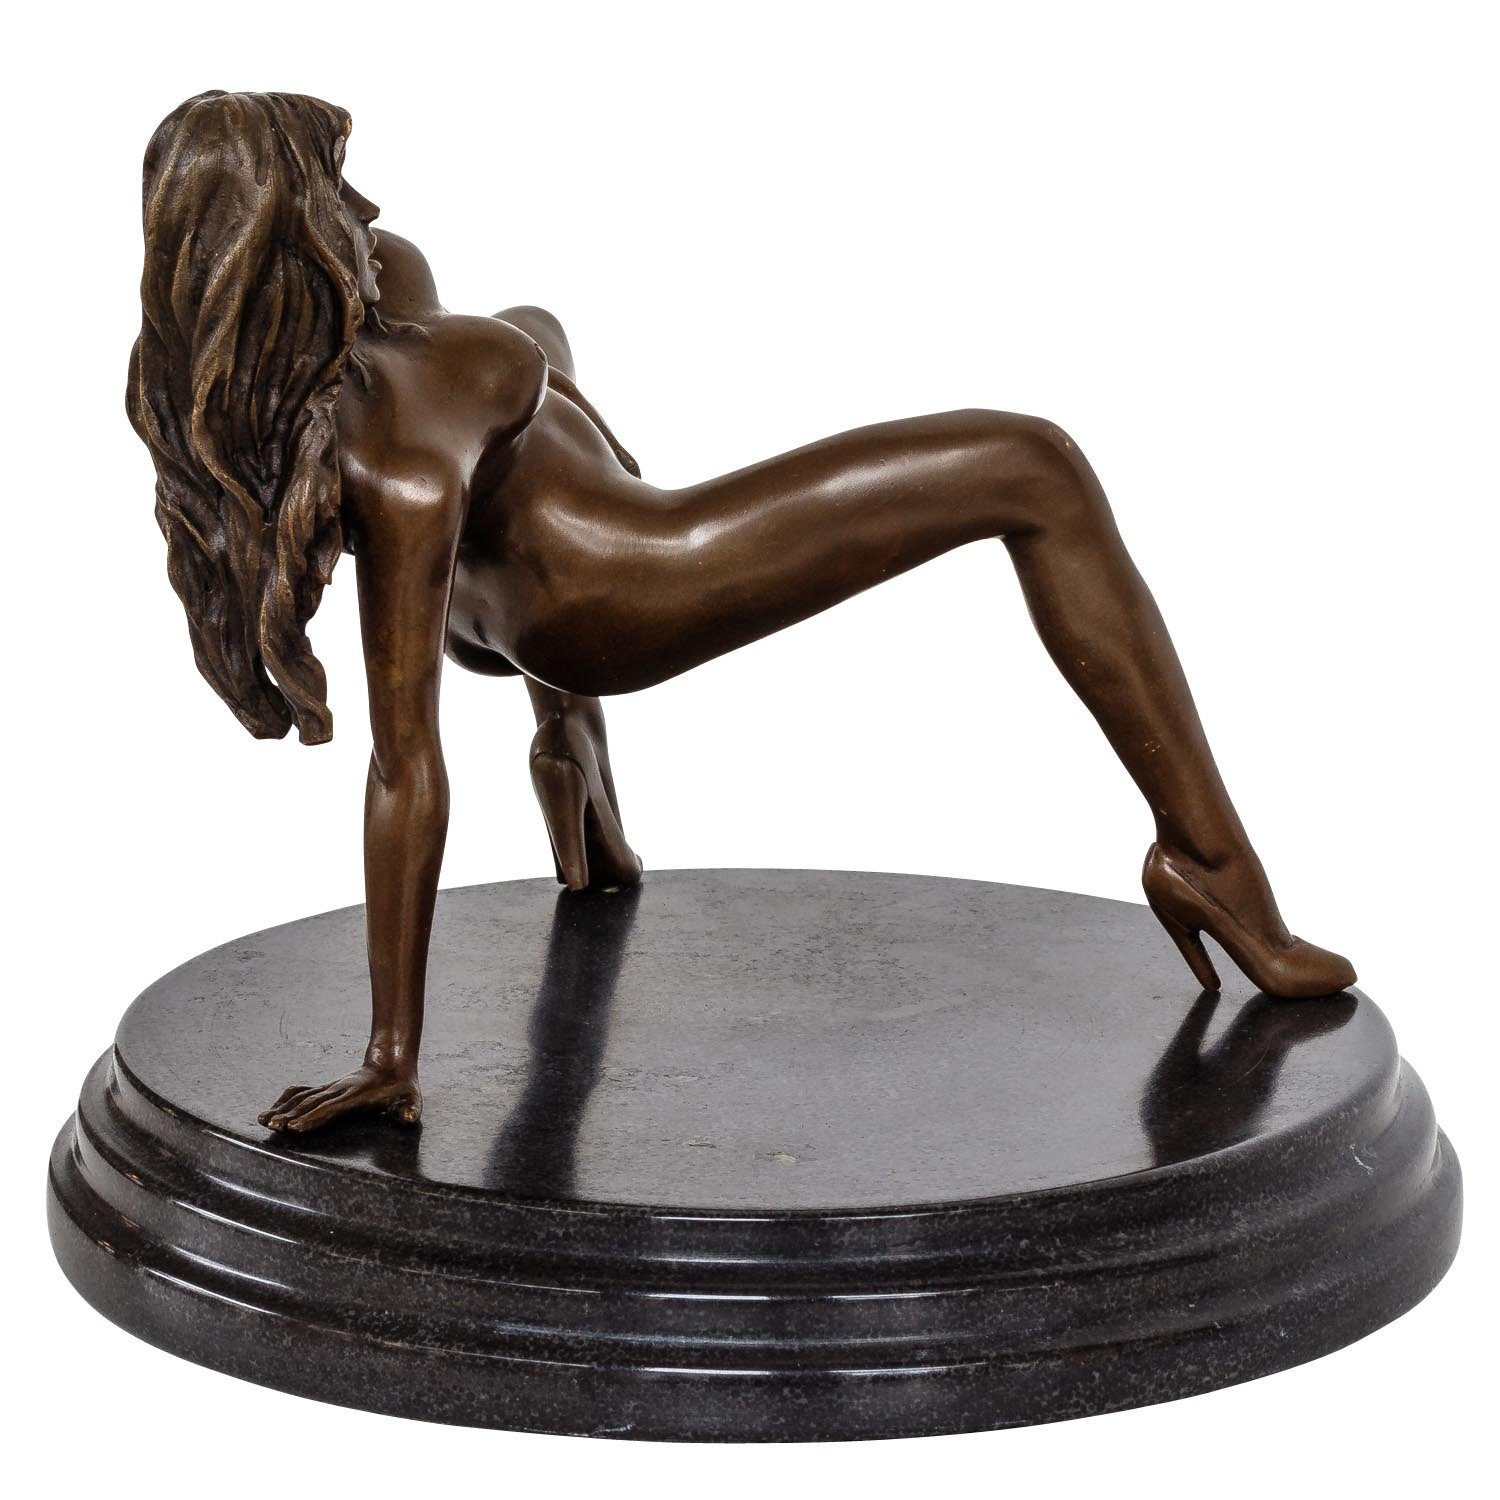 Aubaho Skulptur Bronzeskulptur Frau Erotik Kunst im Antik-Stil Bronze Figur Statue 18c